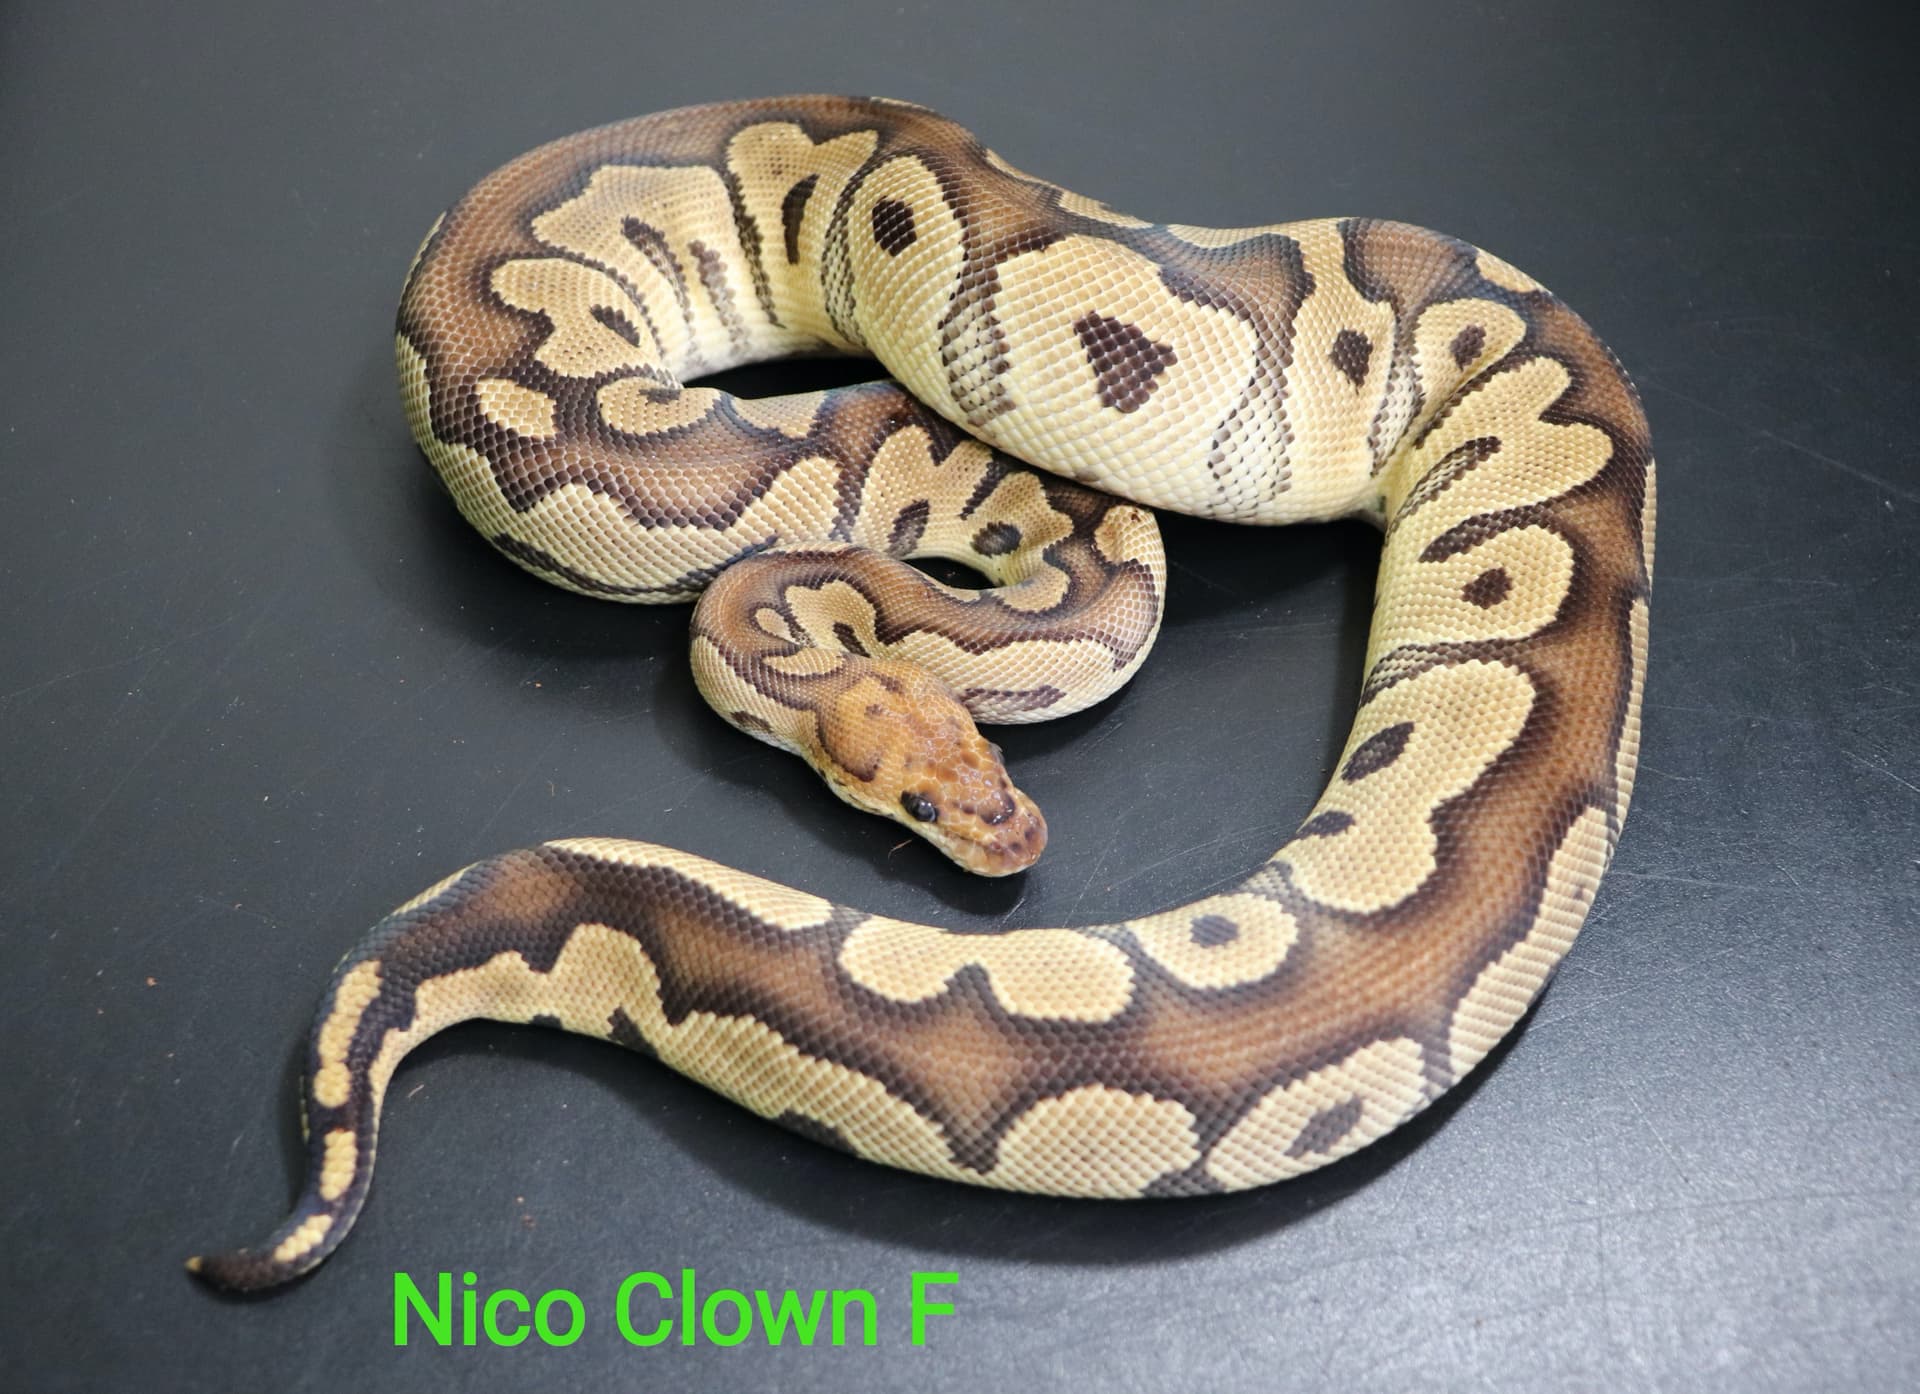 Nico Clown by DNJ Pythons